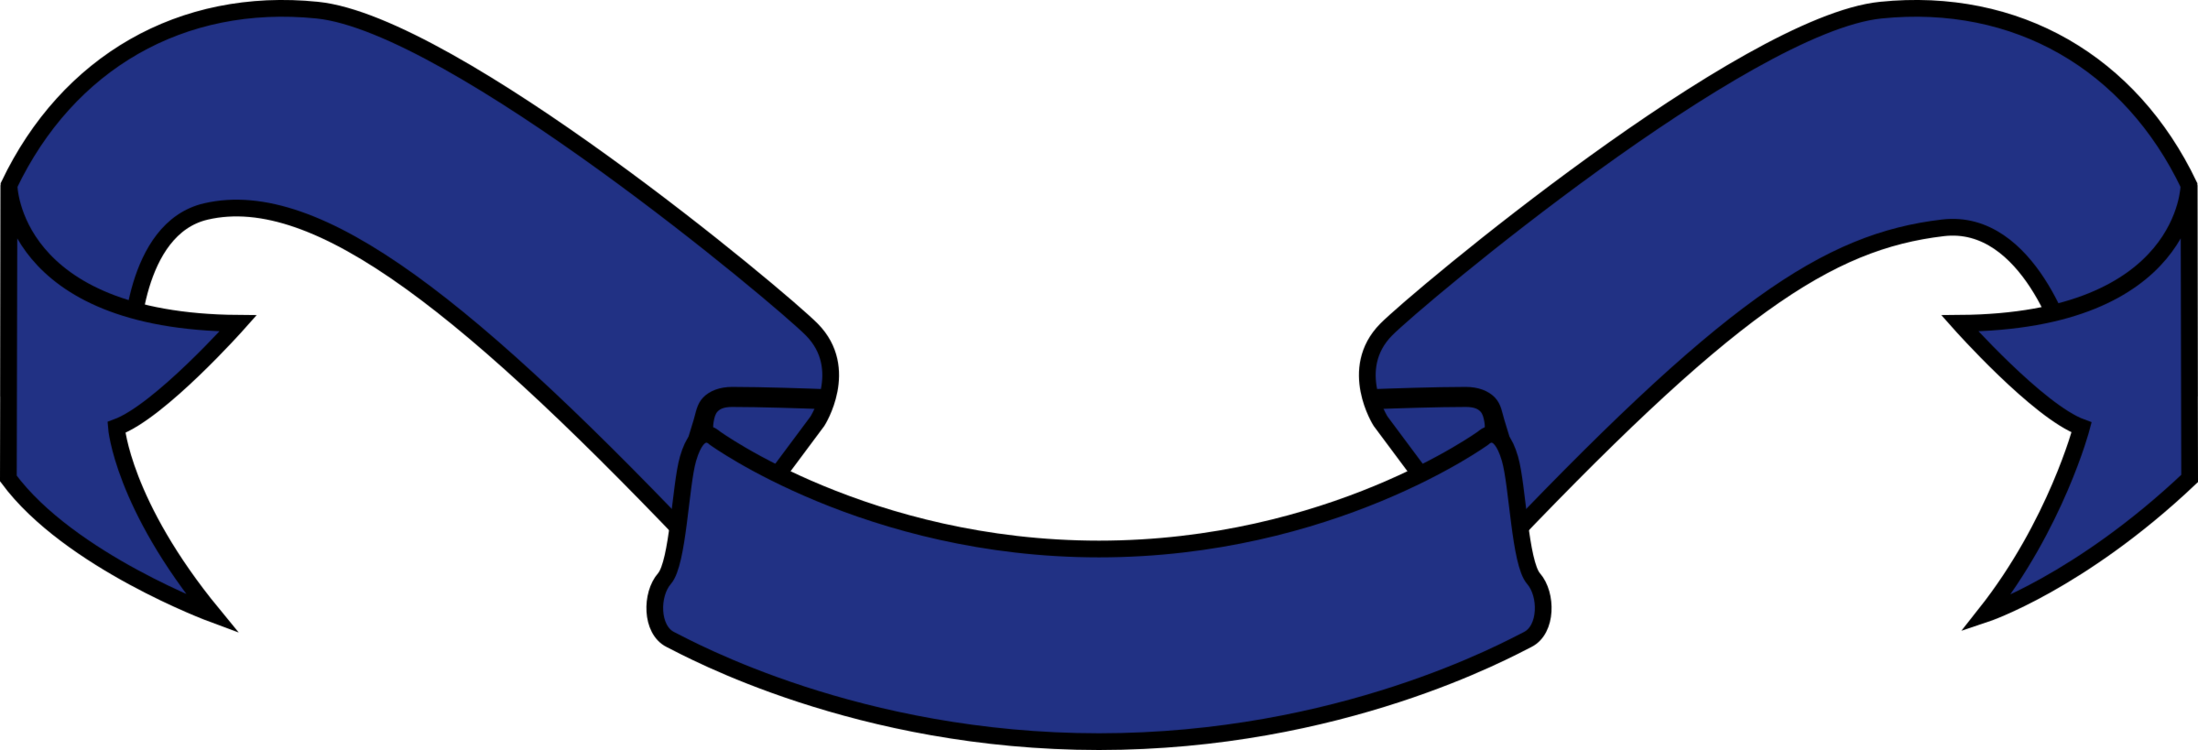 Electric Blue,Area,Symbol